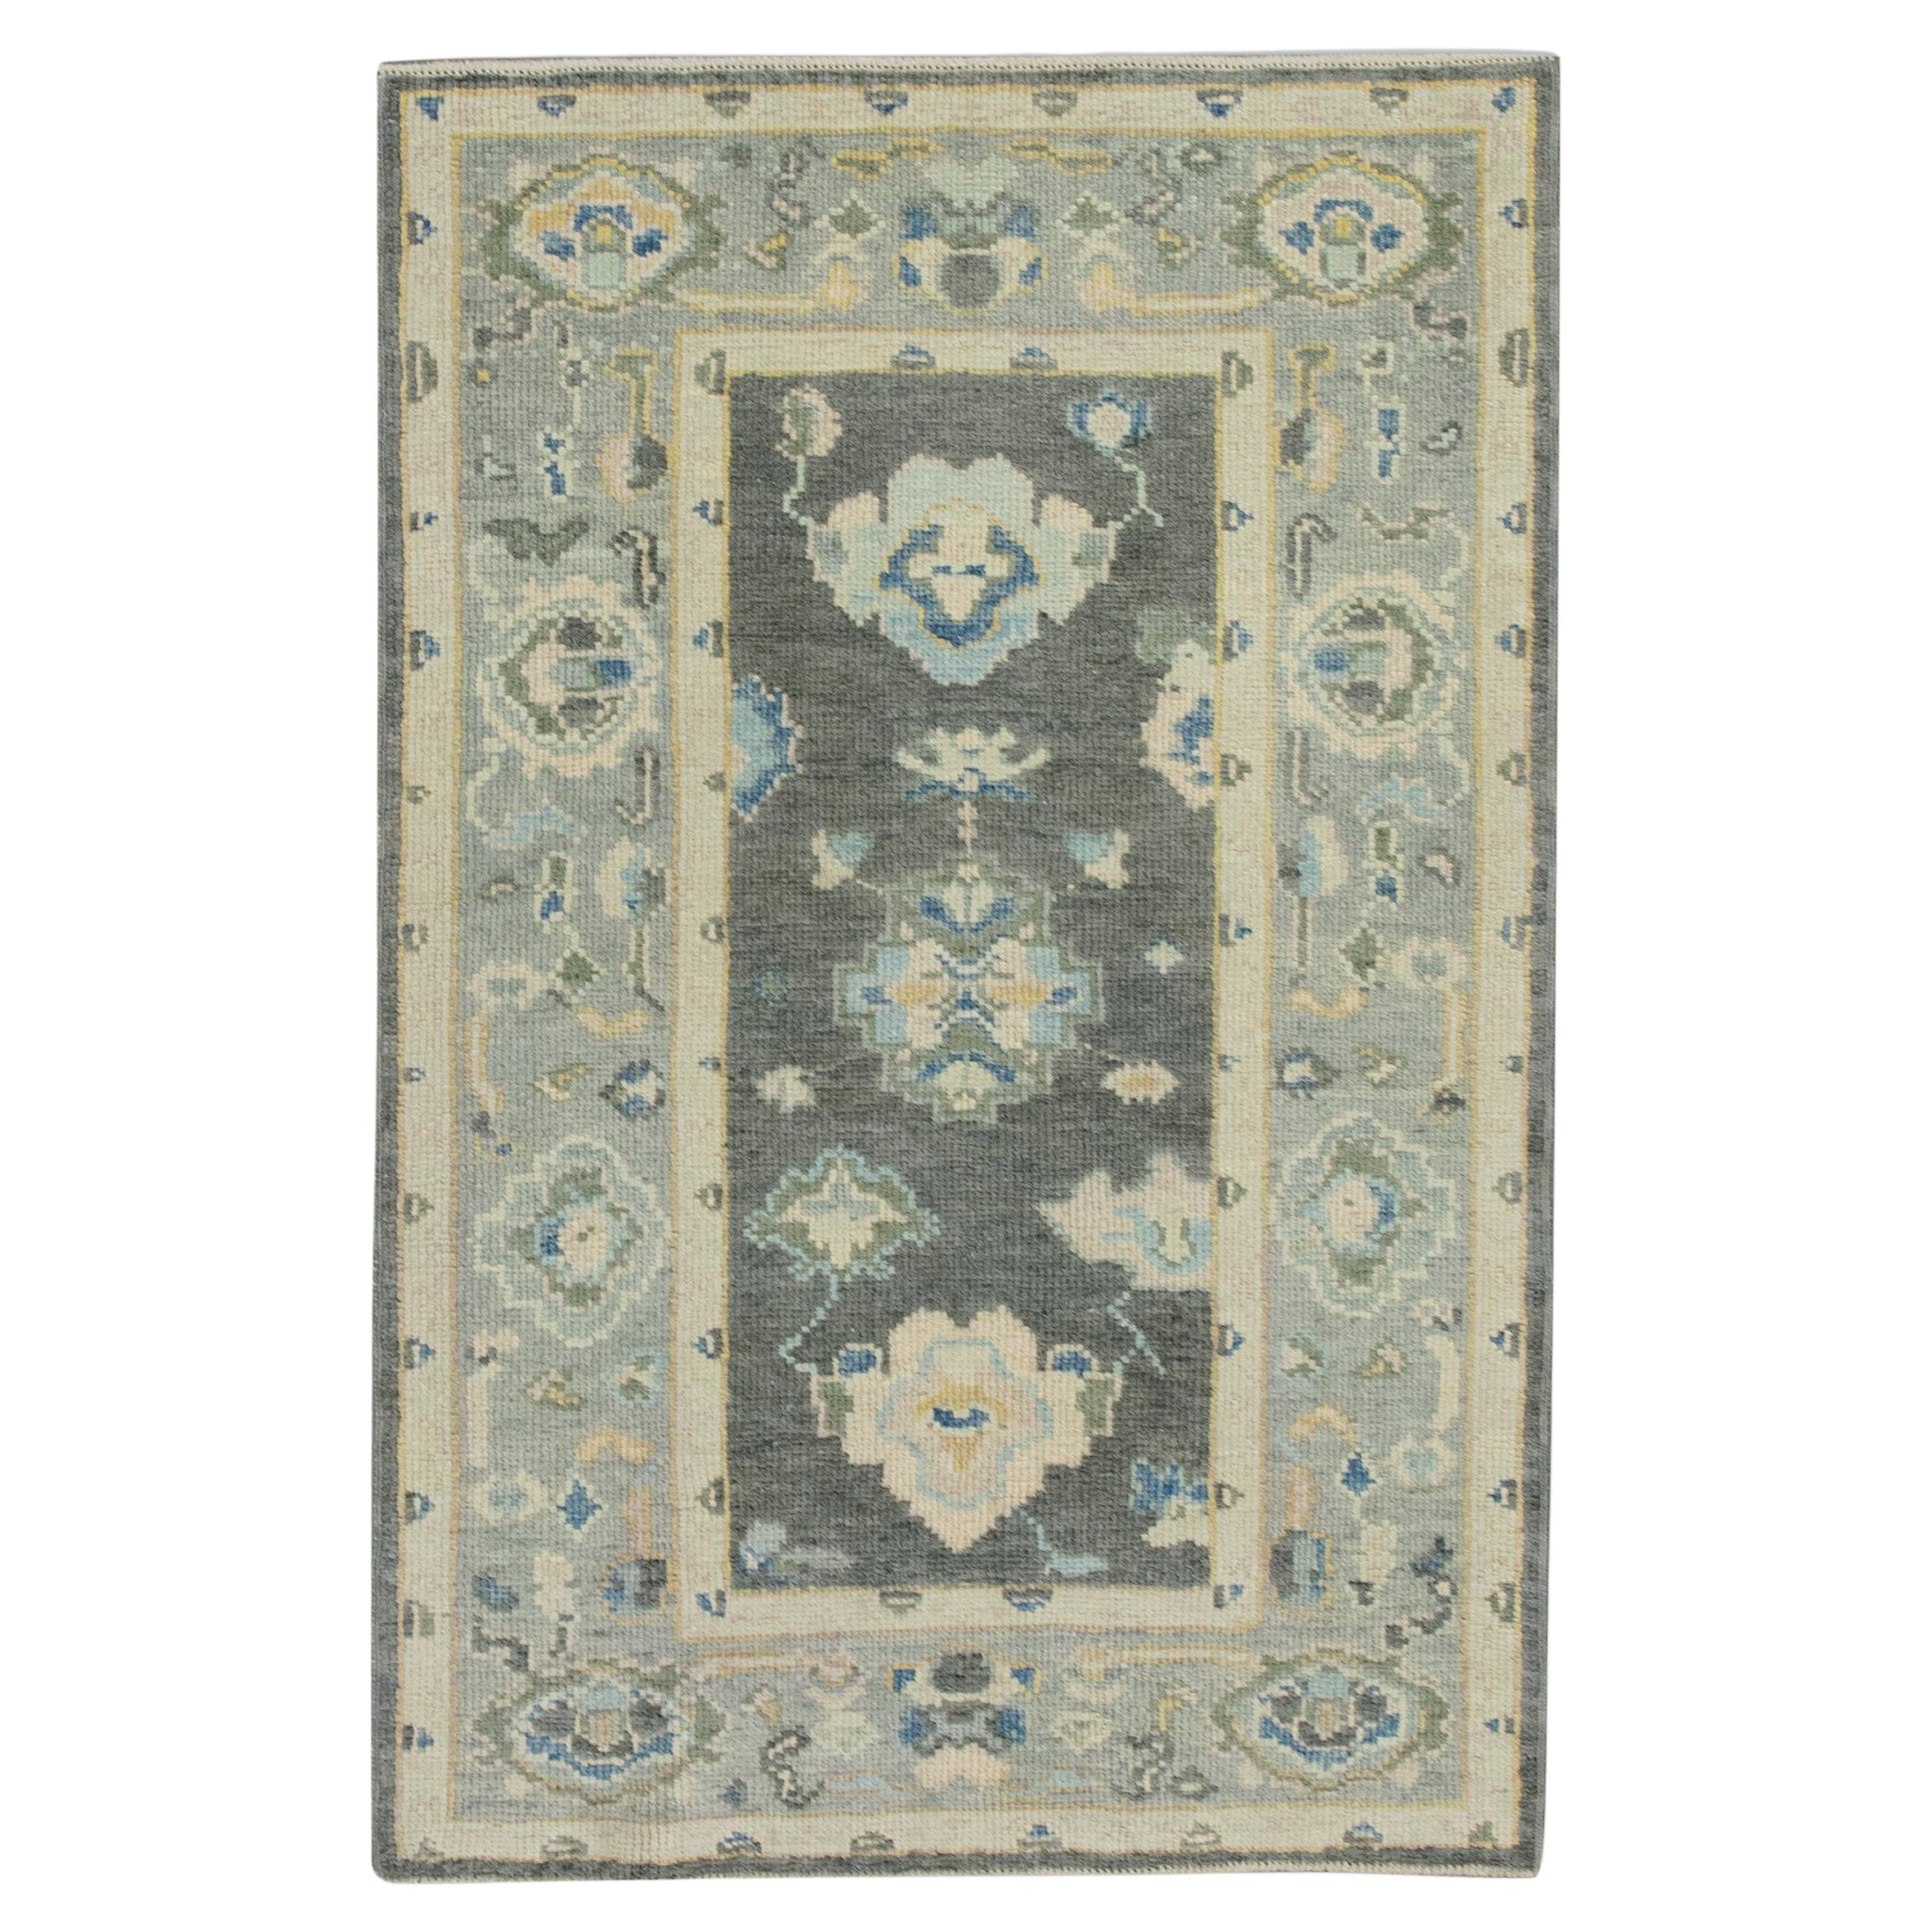 Türkischer Oushak-Teppich aus handgewebter Wolle in Holzkohle und Blau mit Blumenmuster 2'11" x 4'9"